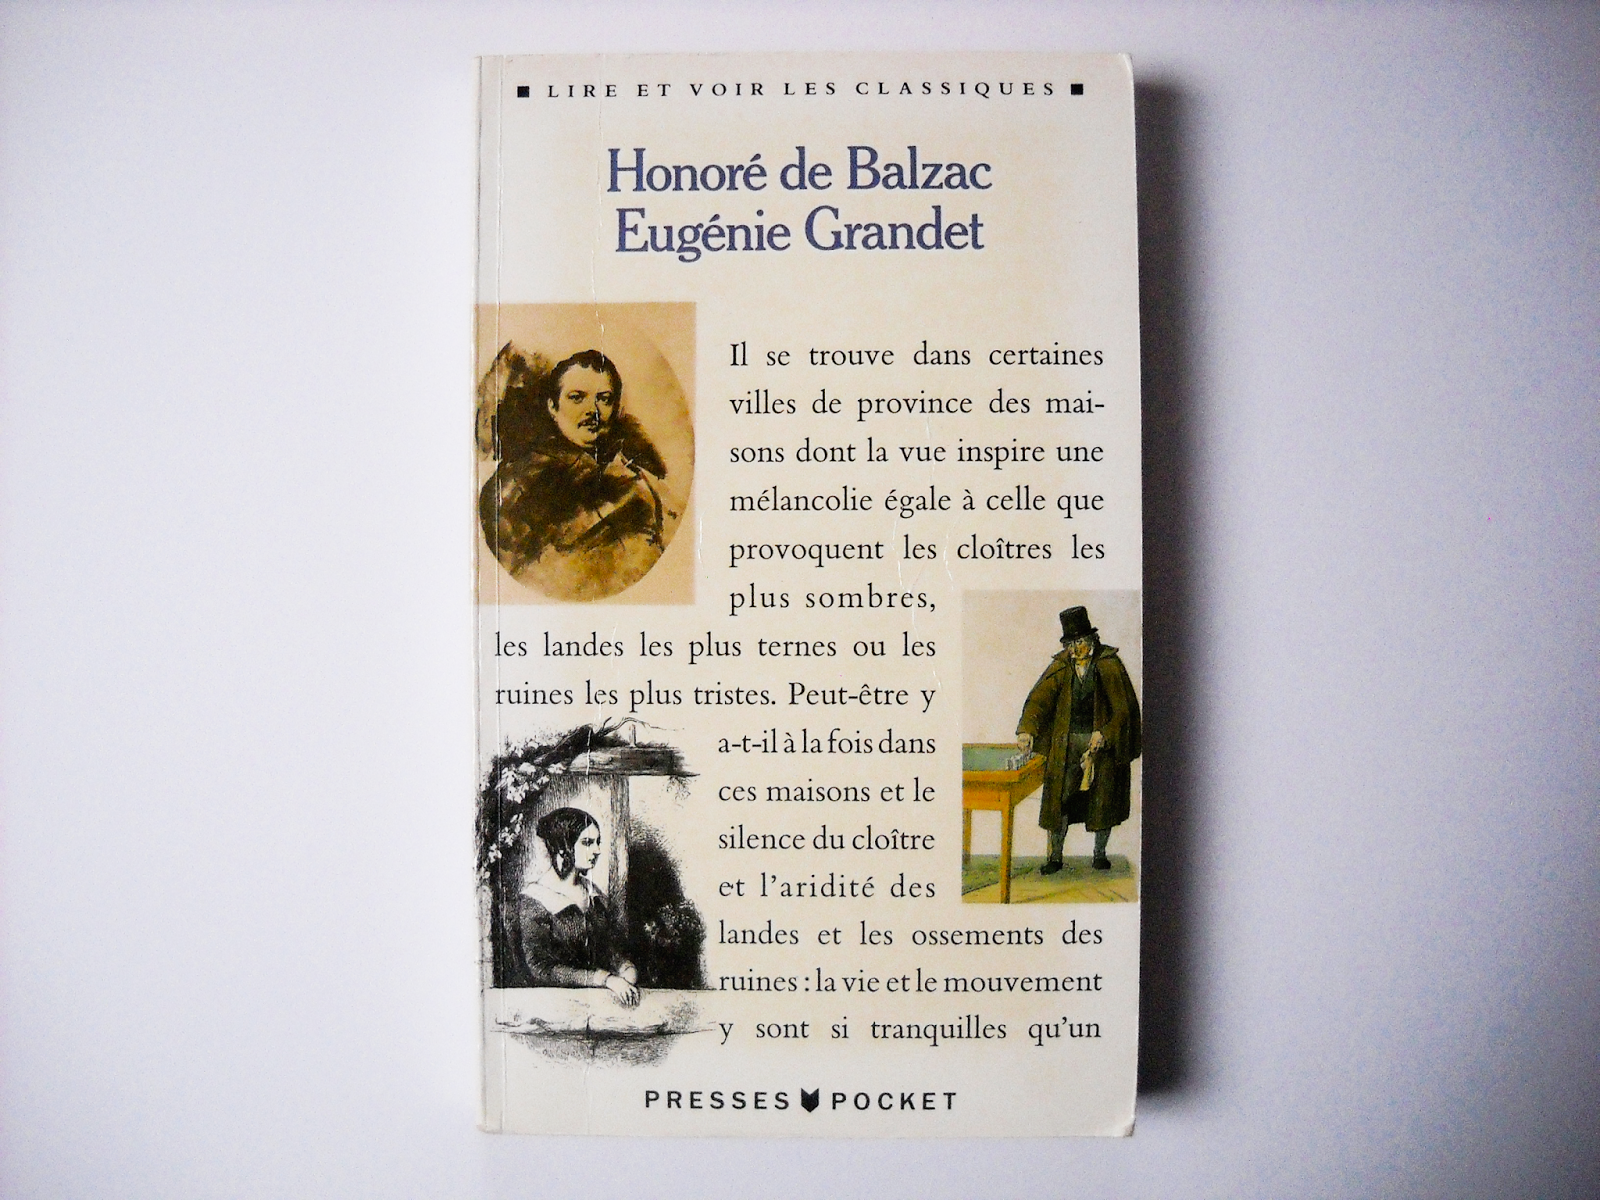 Eugenie Grandet [Honoré de Balzac]